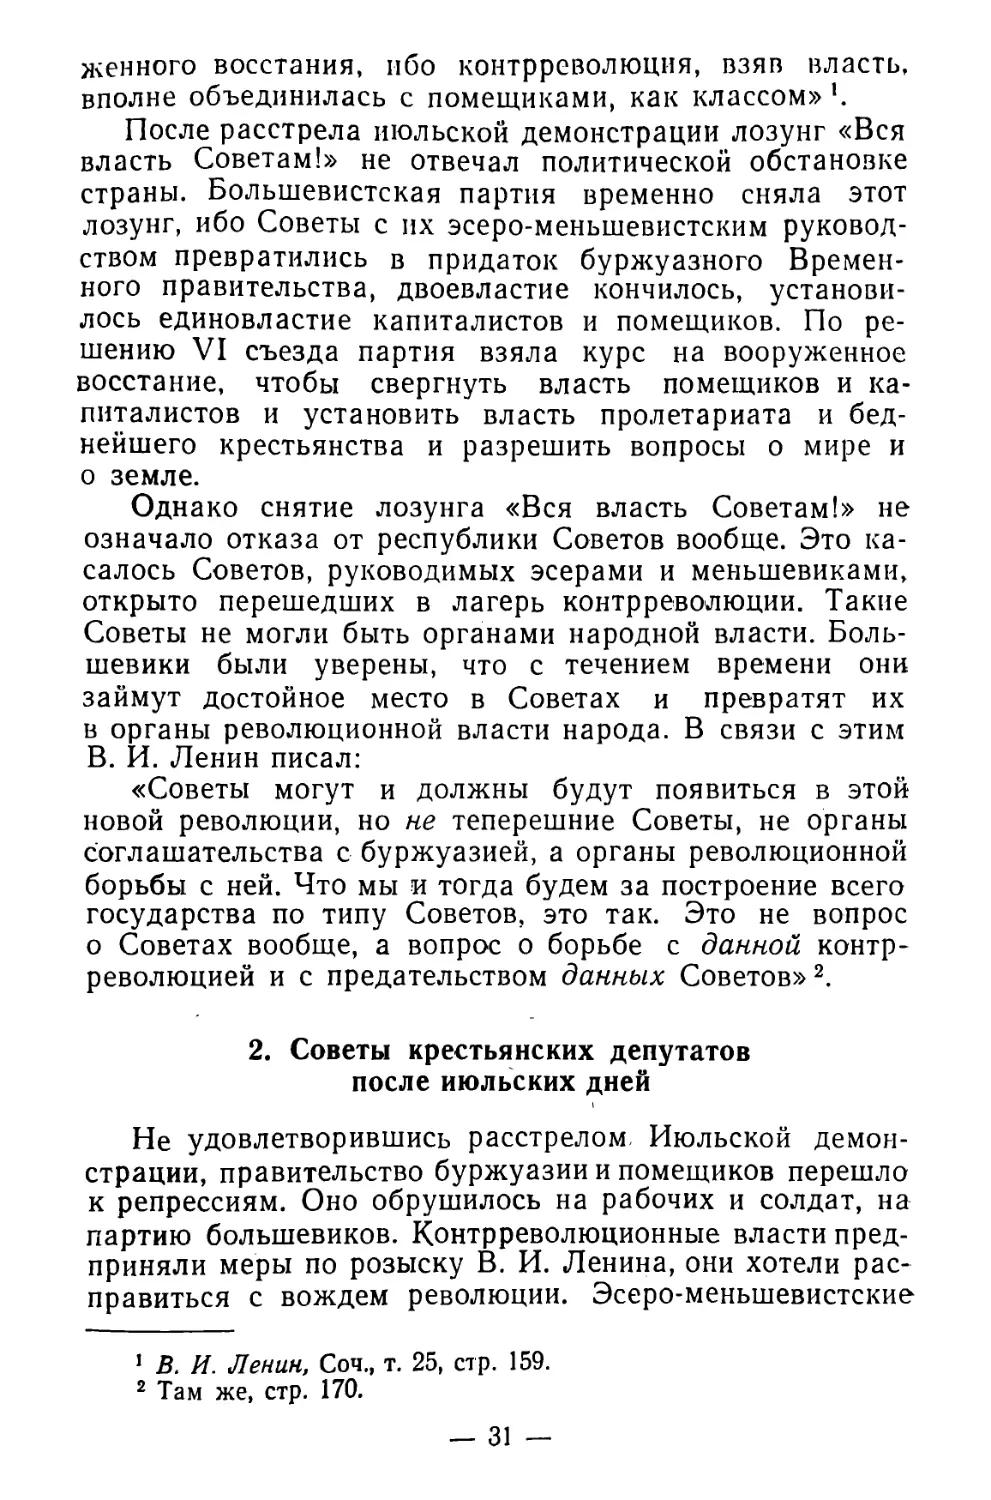 2. Советы крестьянских депутатов после июльских дней